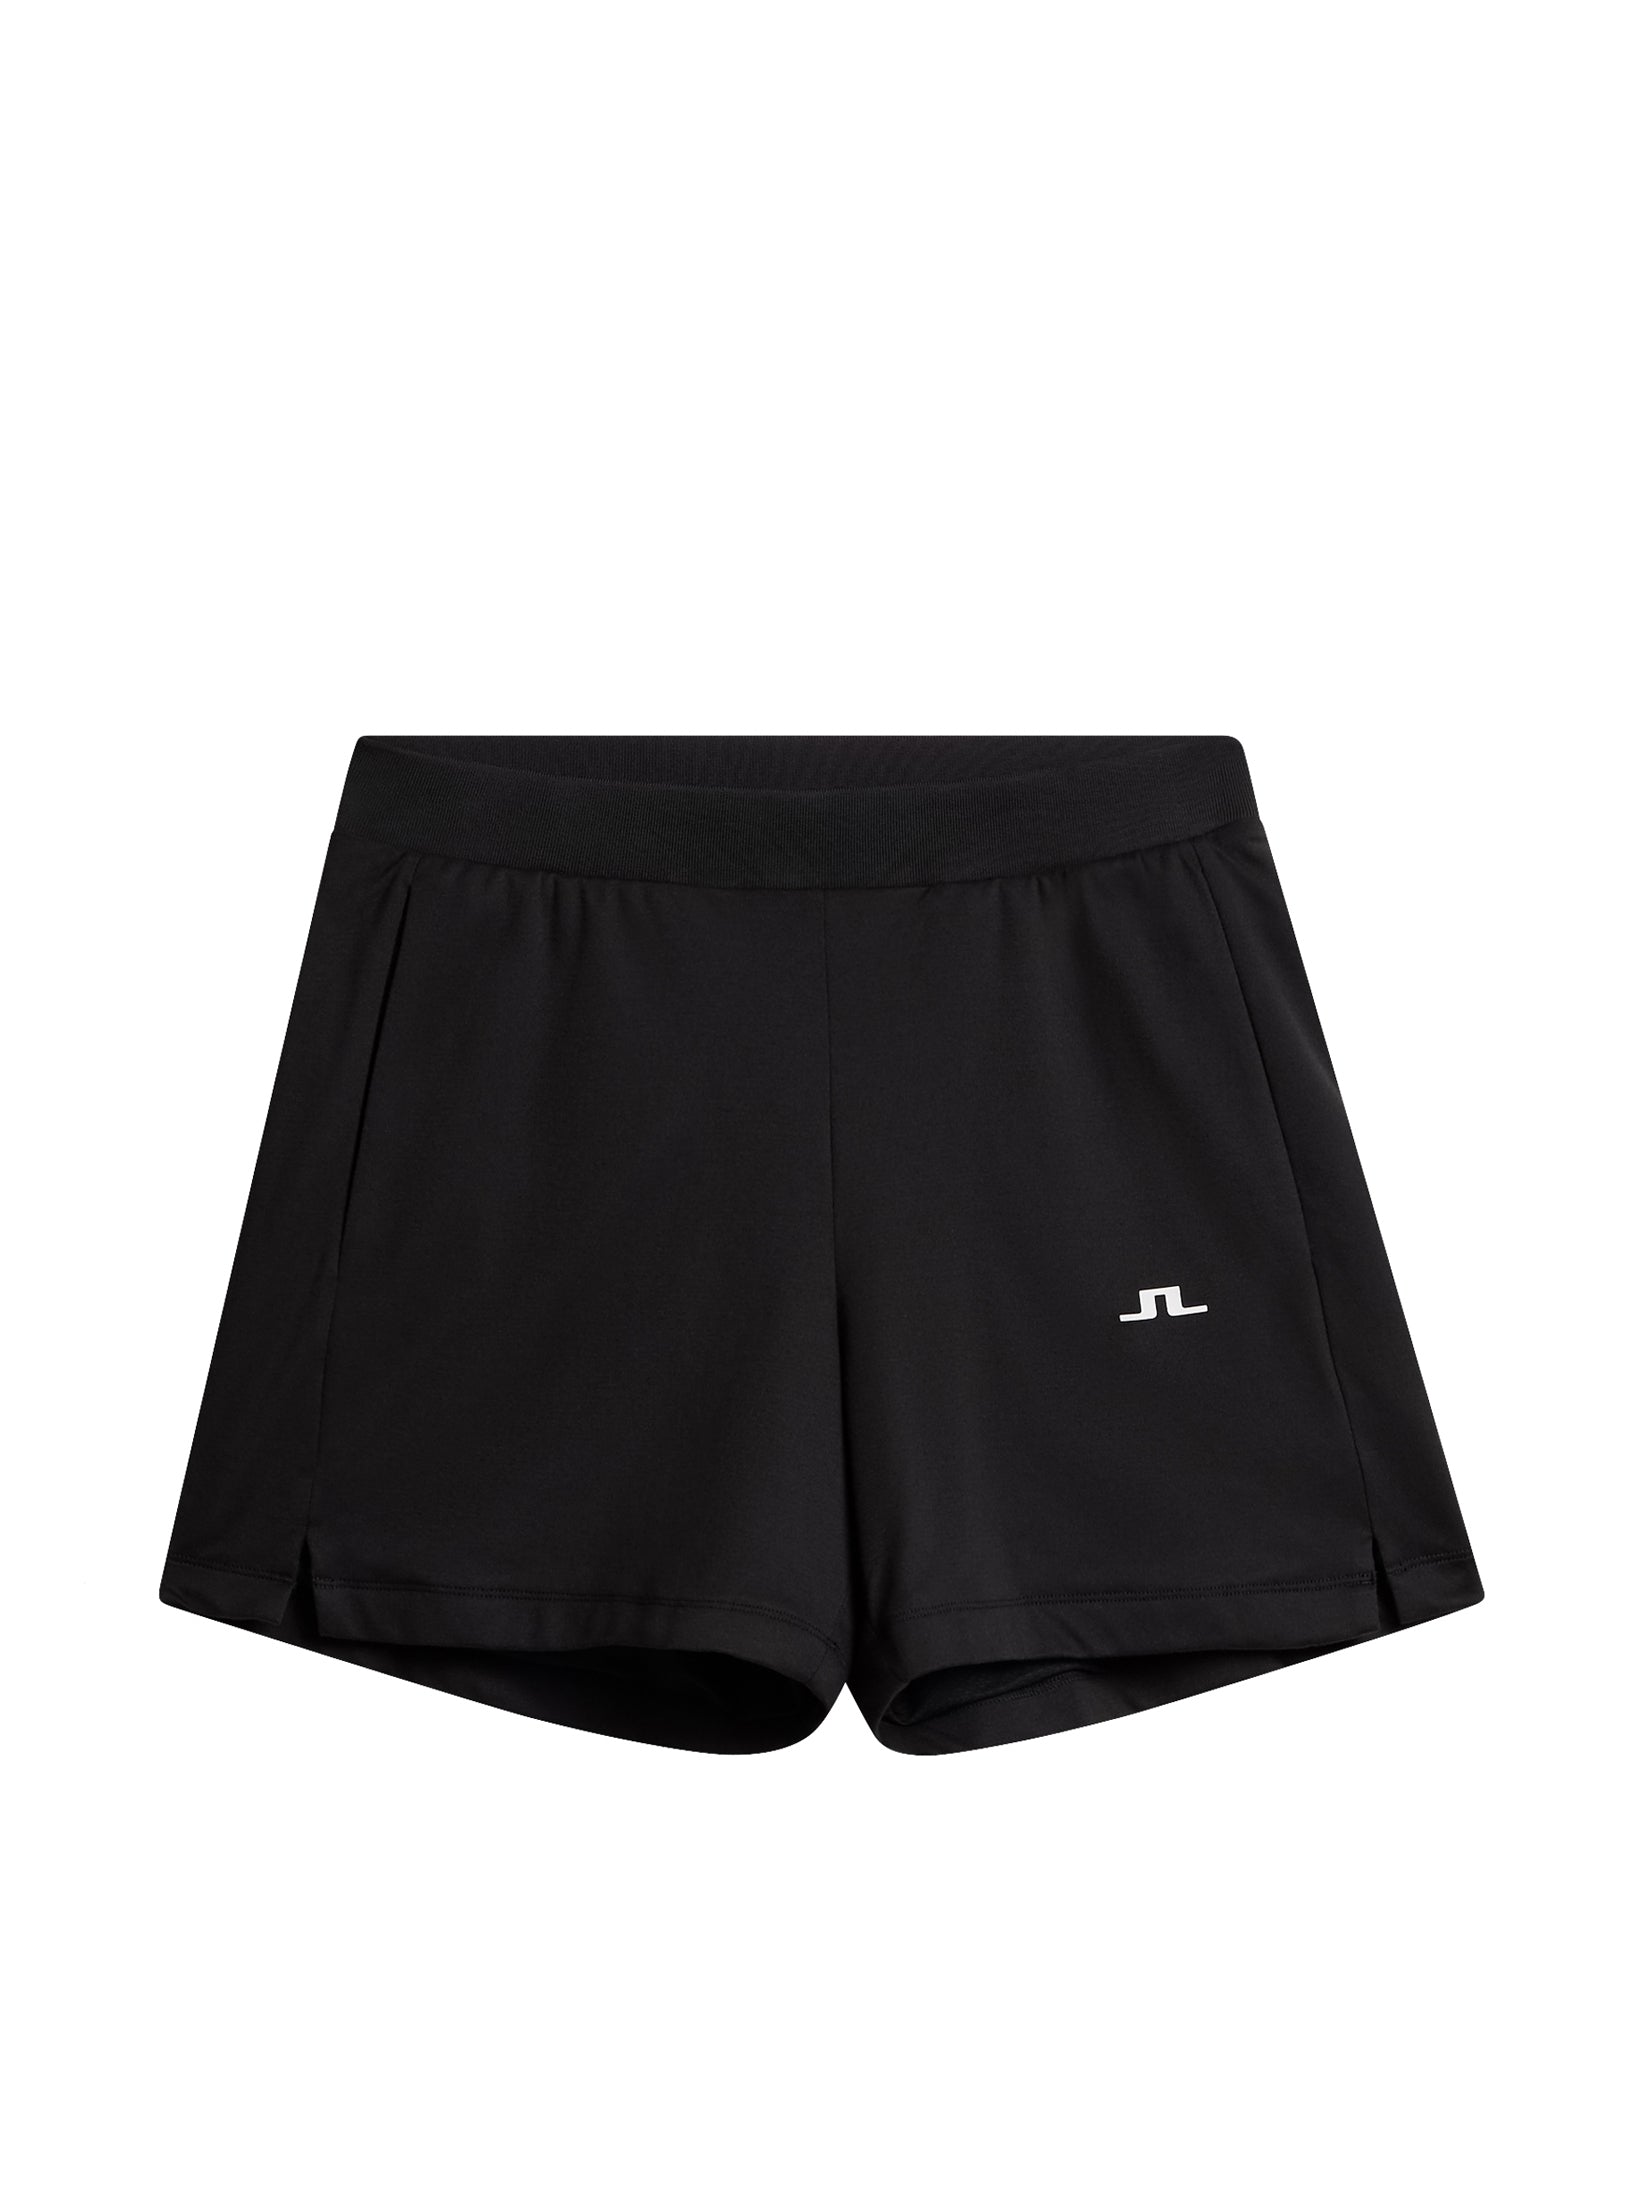 Vice Shorts